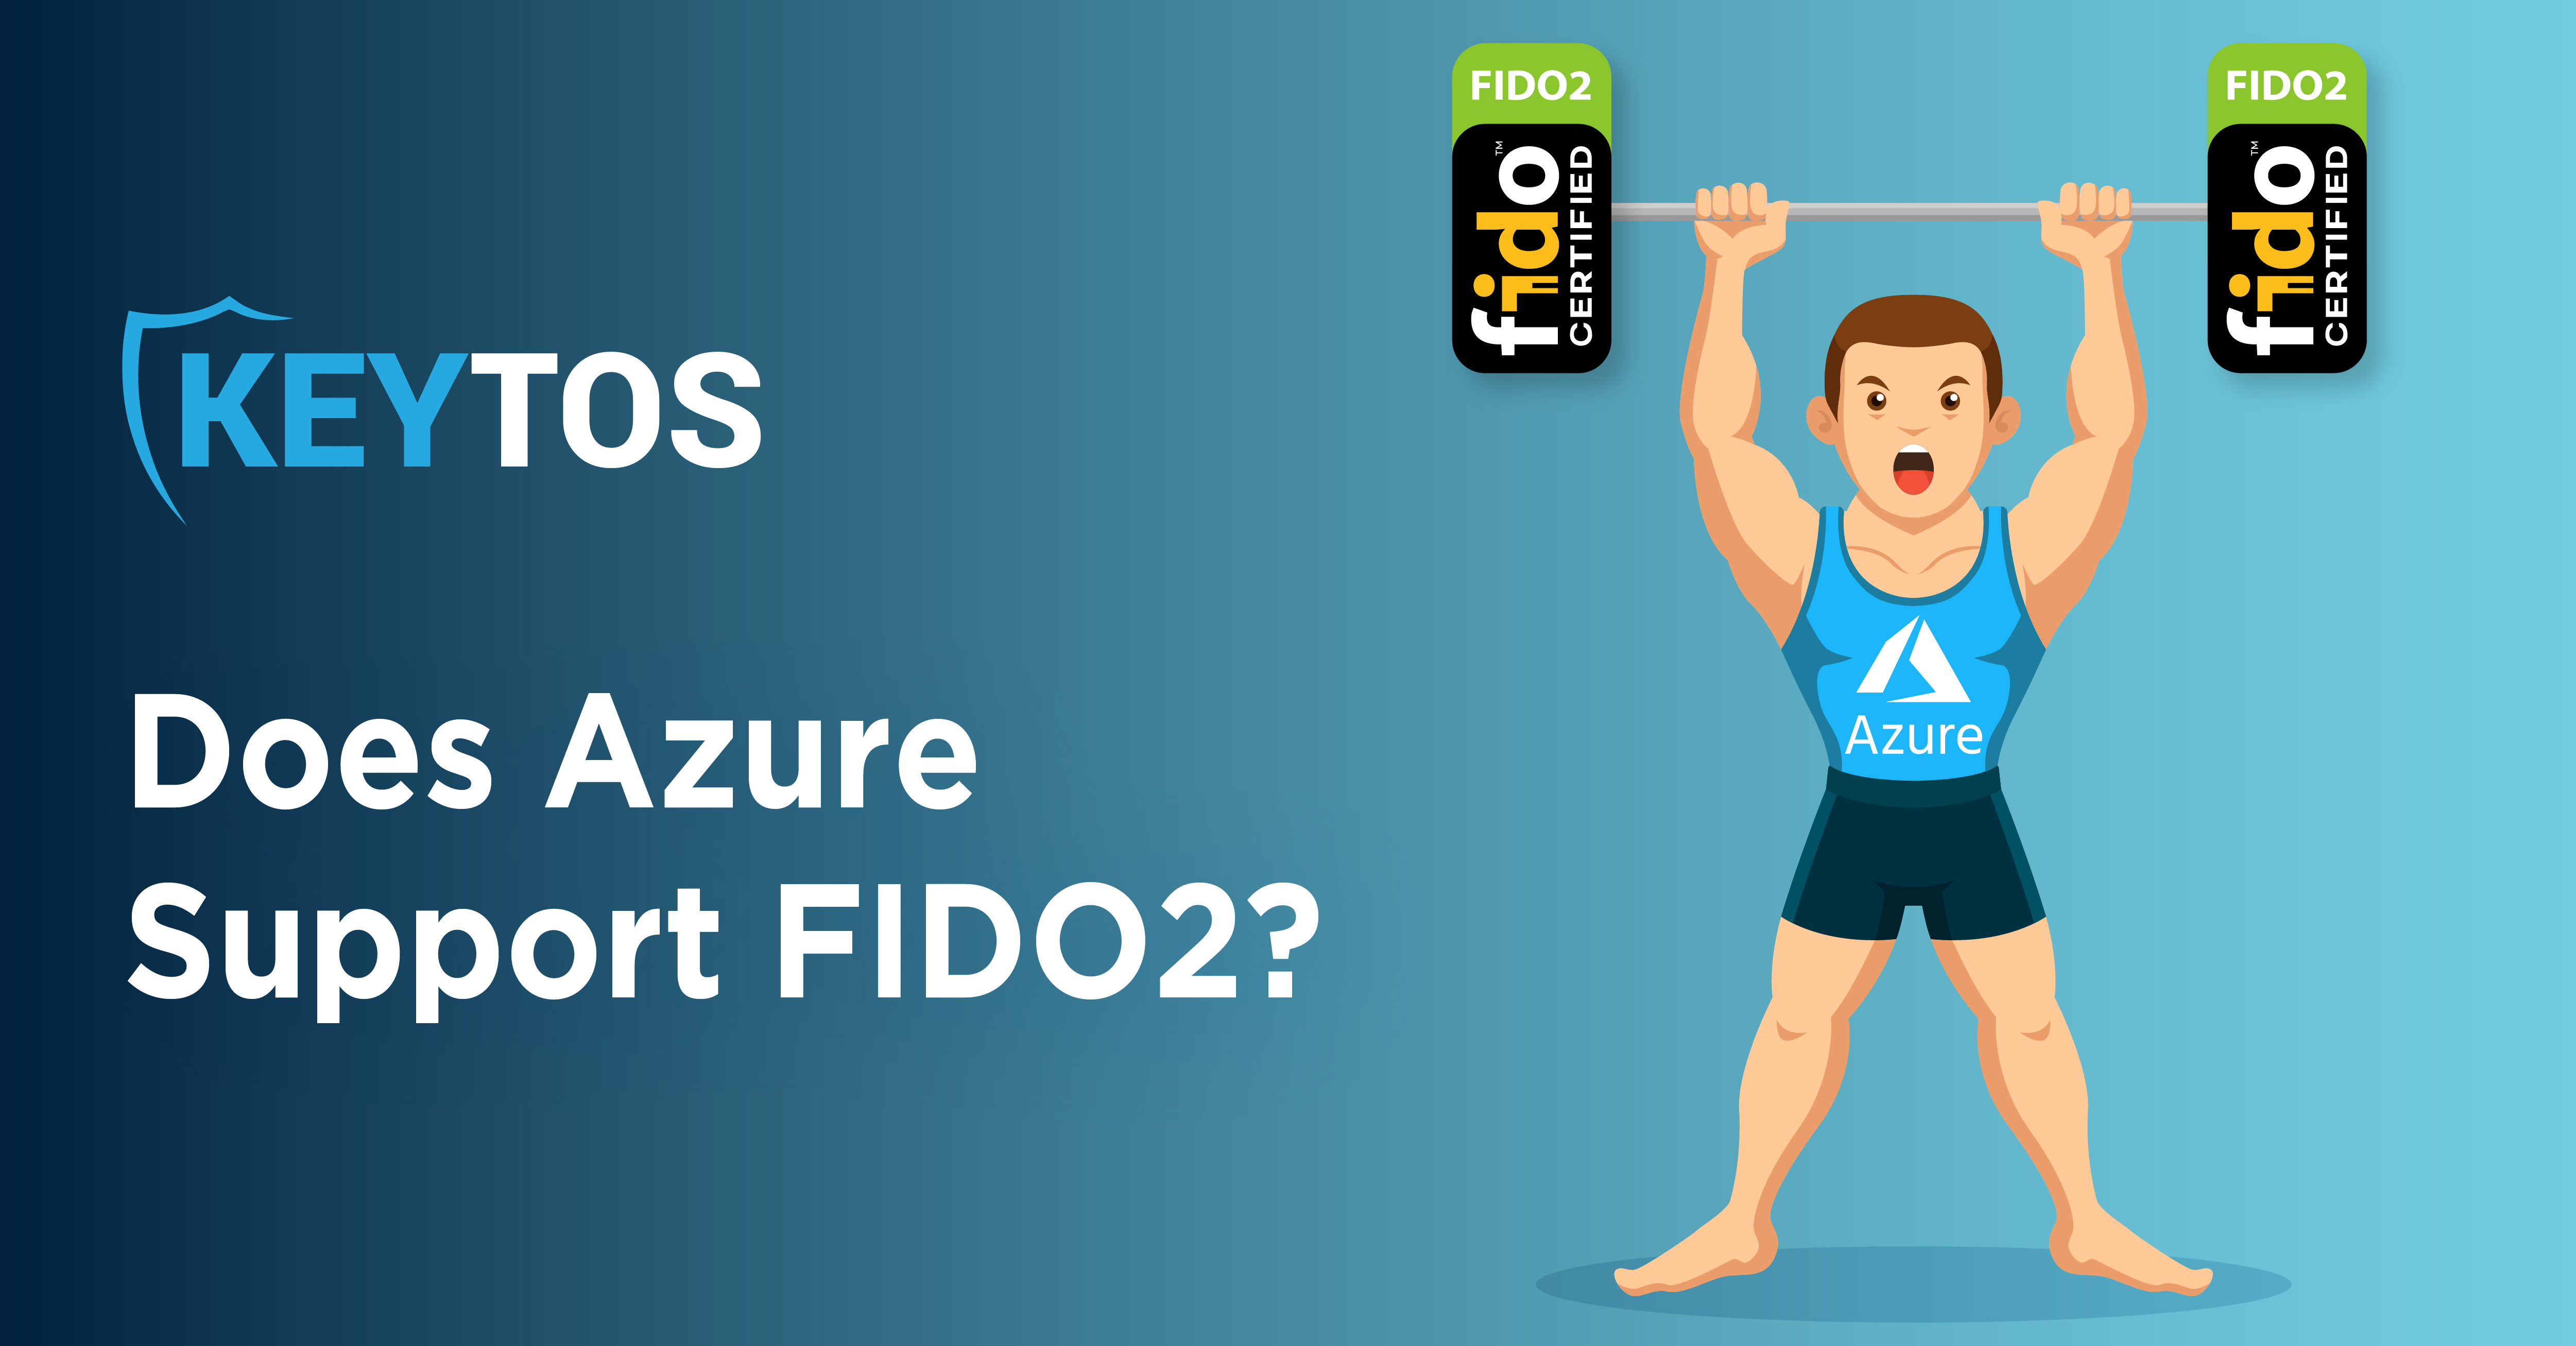 ¿Azure es compatible con FIDO2? Una lección rápida sobre autenticación sin contraseña